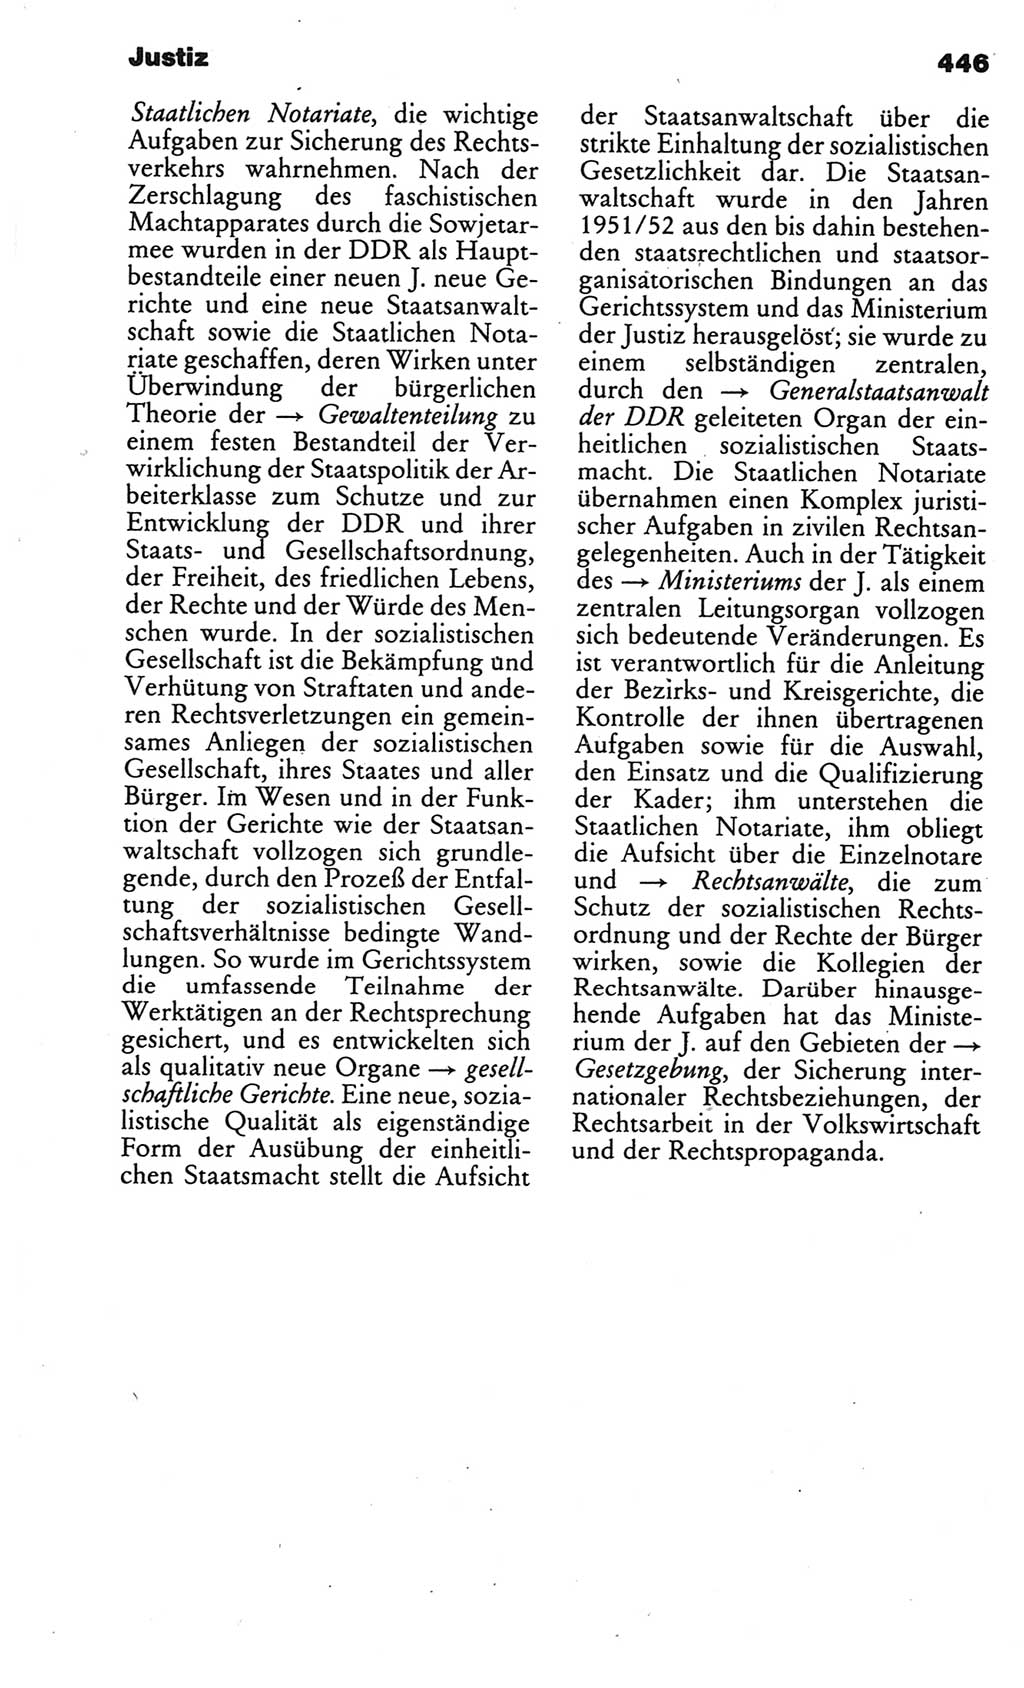 Kleines politisches Wörterbuch [Deutsche Demokratische Republik (DDR)] 1986, Seite 446 (Kl. pol. Wb. DDR 1986, S. 446)